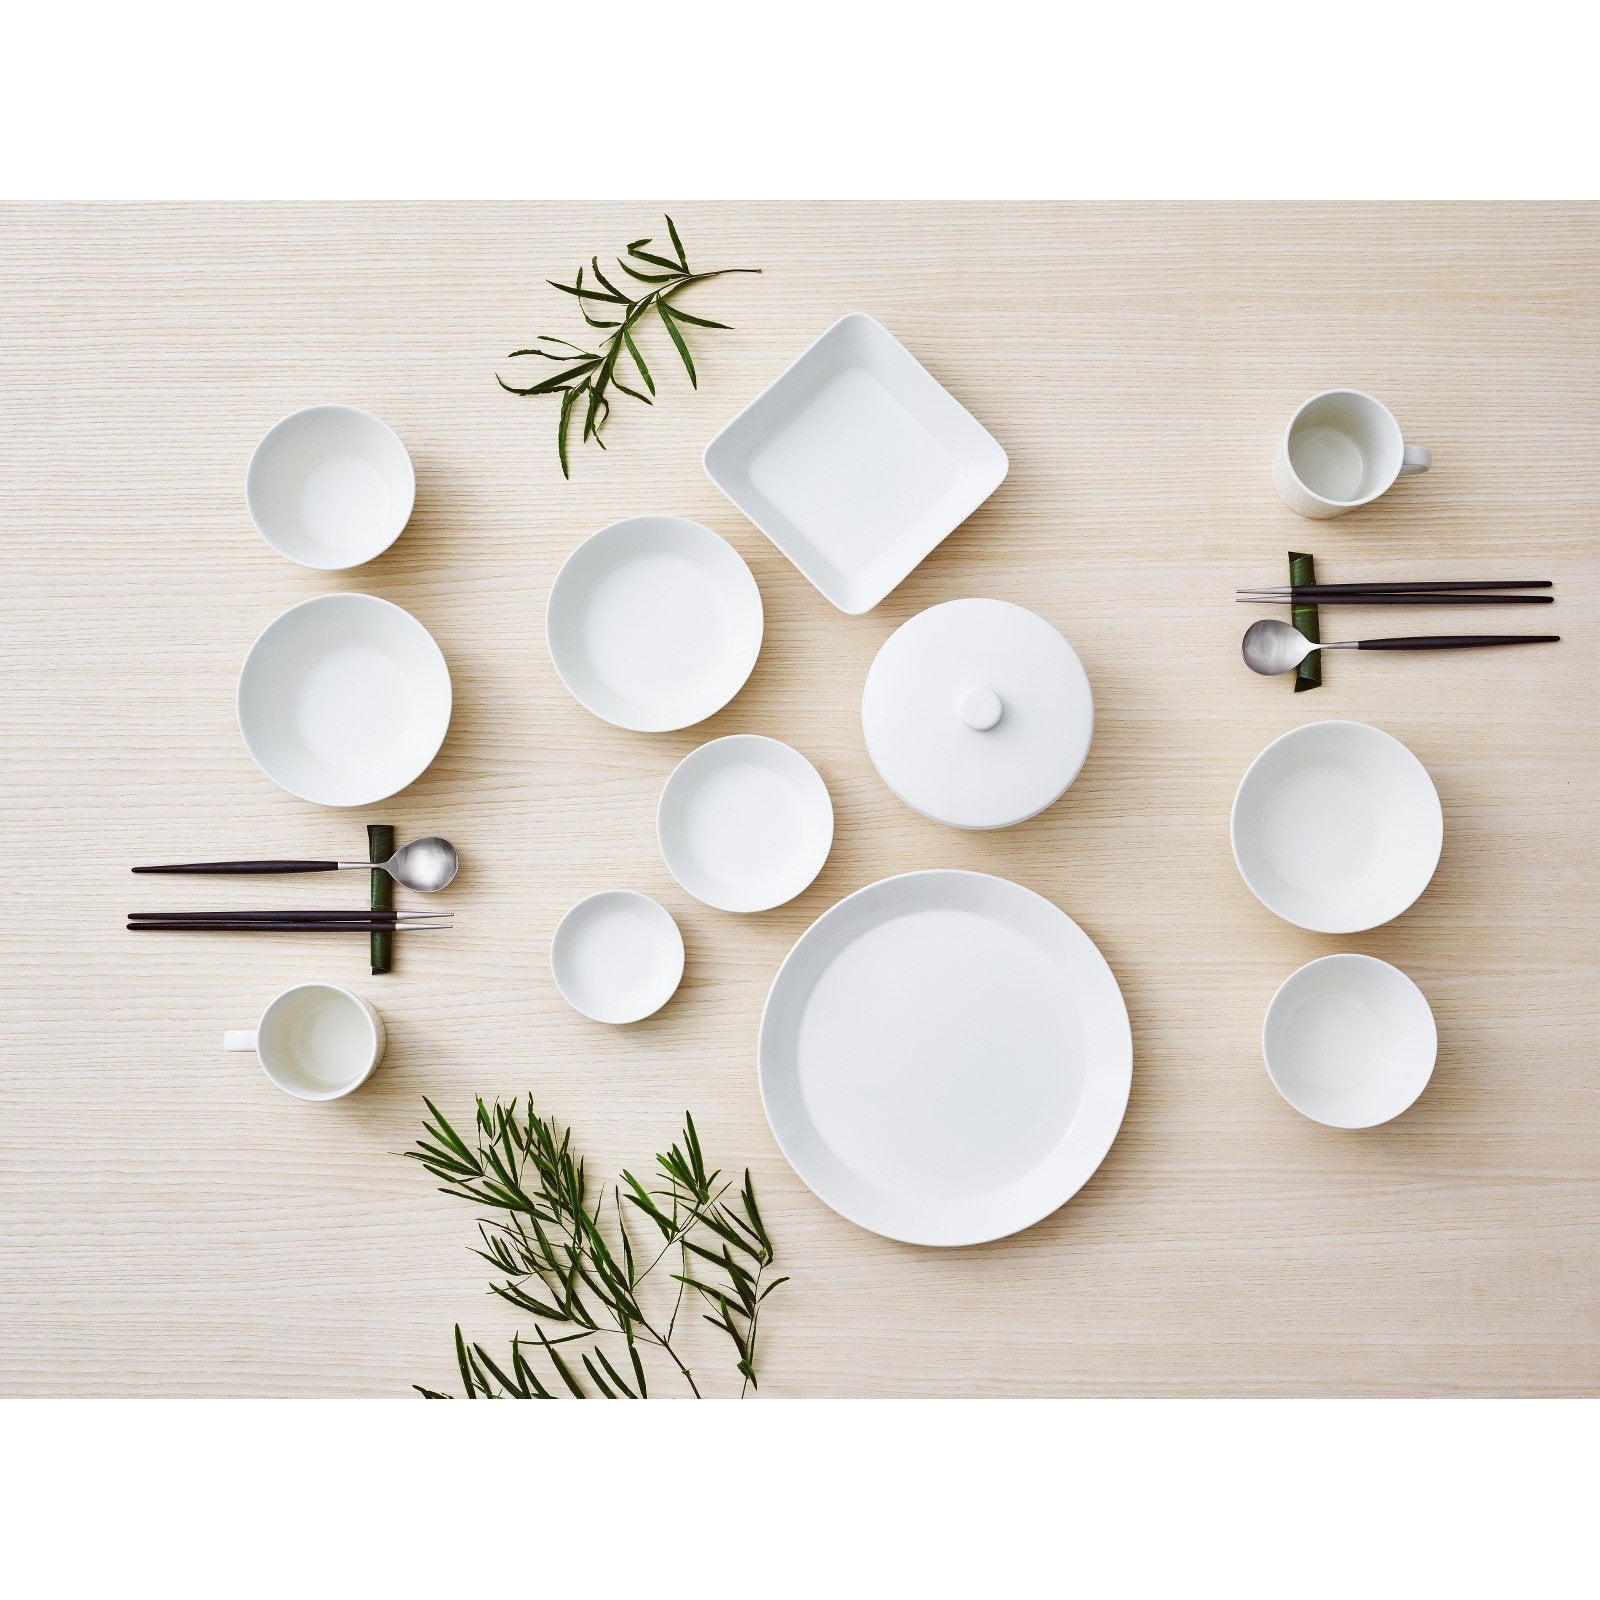 Iittala Teema Bowl Set White, 3 Pieces